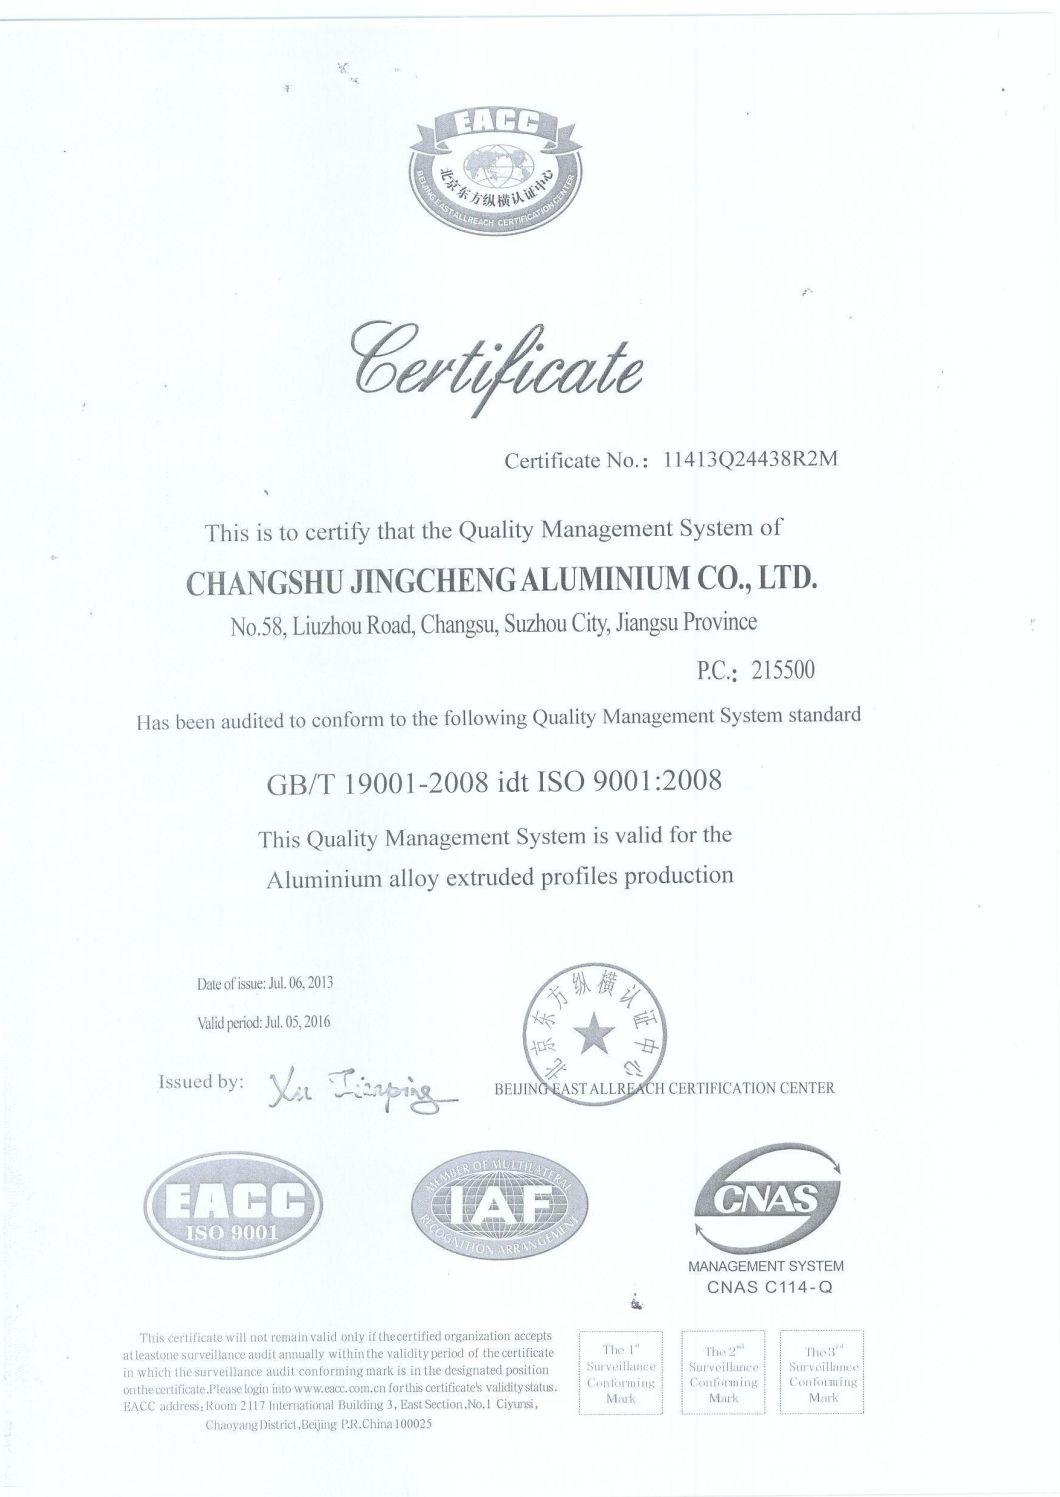 6063 Anodizing Industrial Aluminum Extrusion Profiles (JC-P-84058)